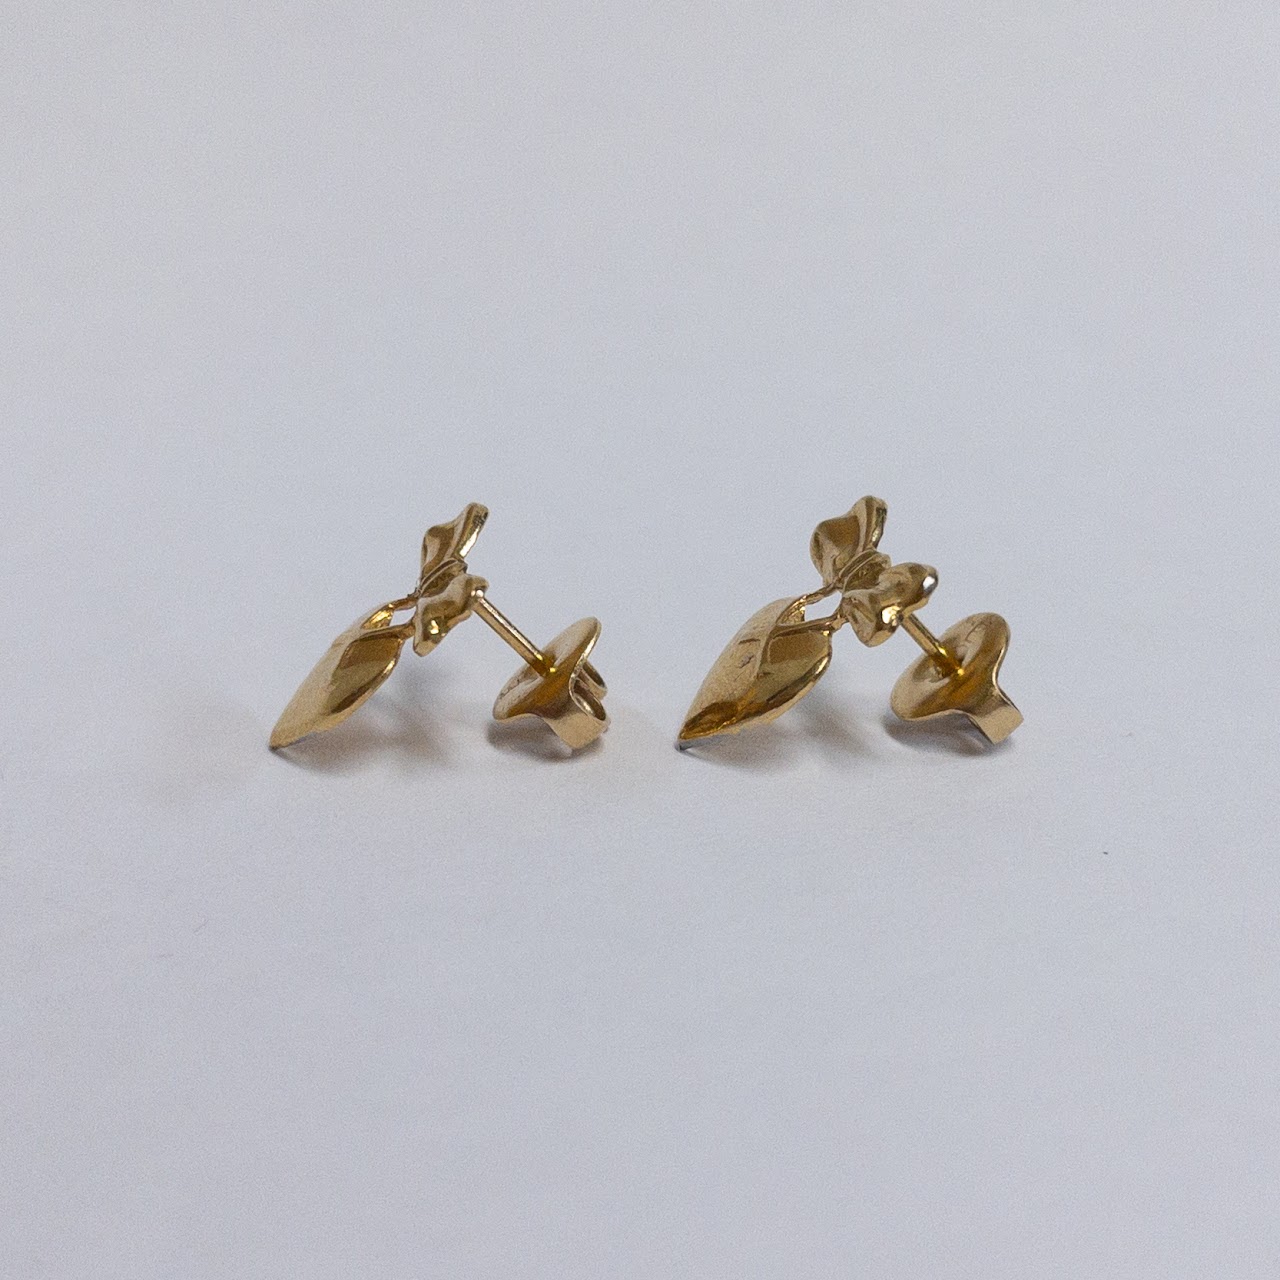 18K Gold Ribbon Heart Earrings